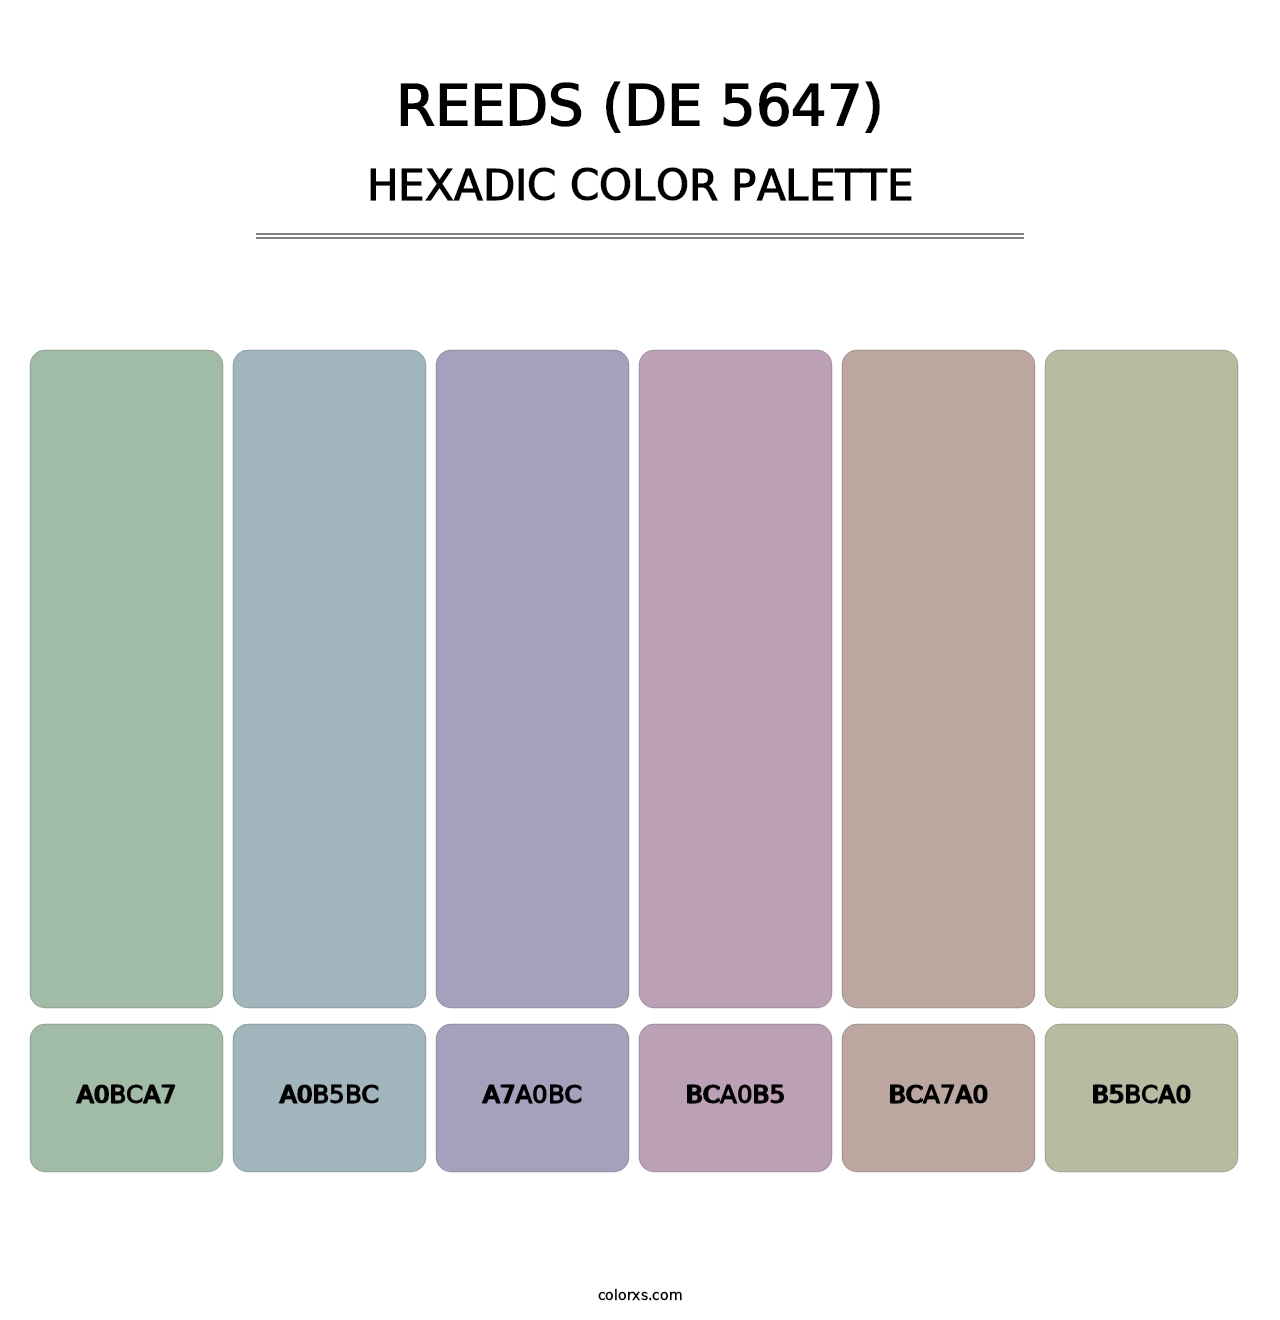 Reeds (DE 5647) - Hexadic Color Palette